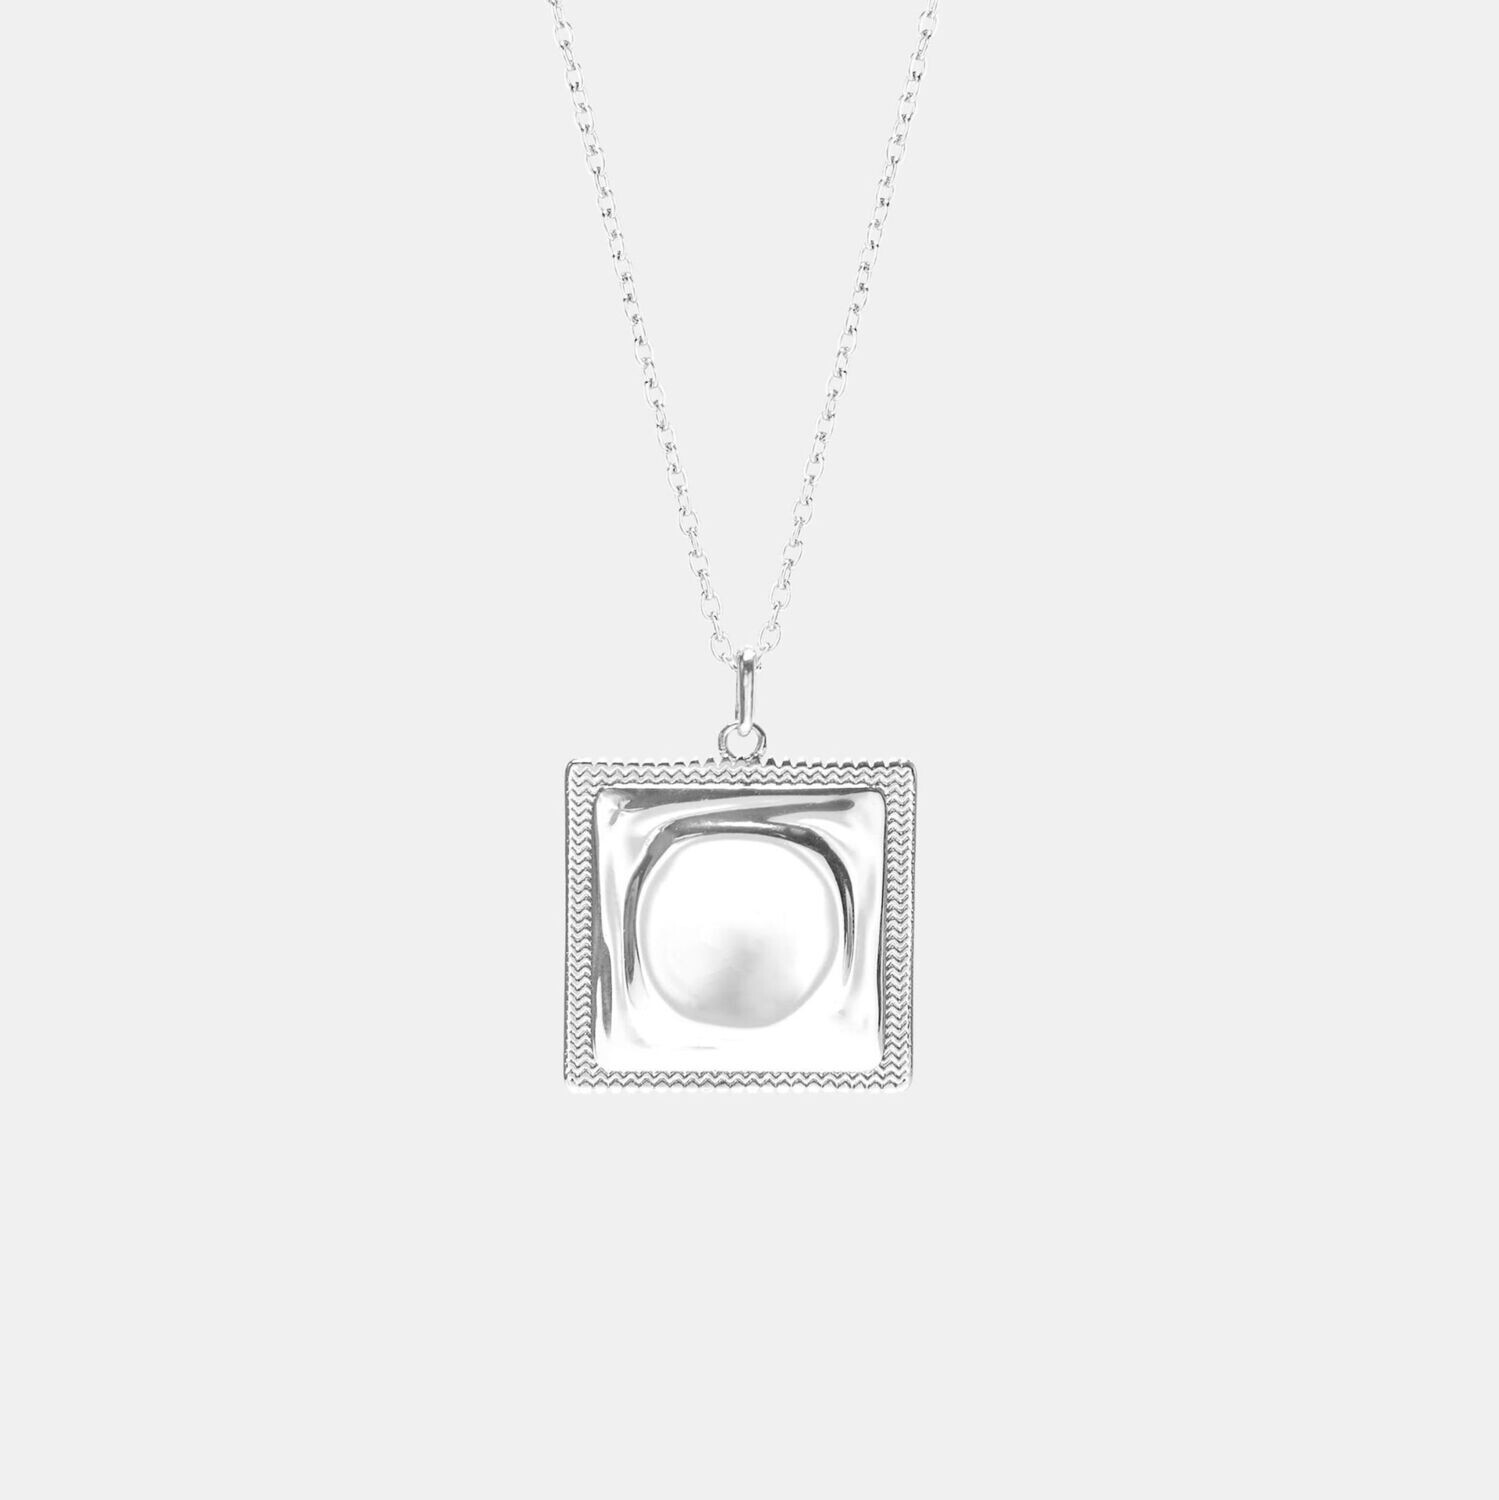 Hoemo World - Condom Pendant Necklace - Silver